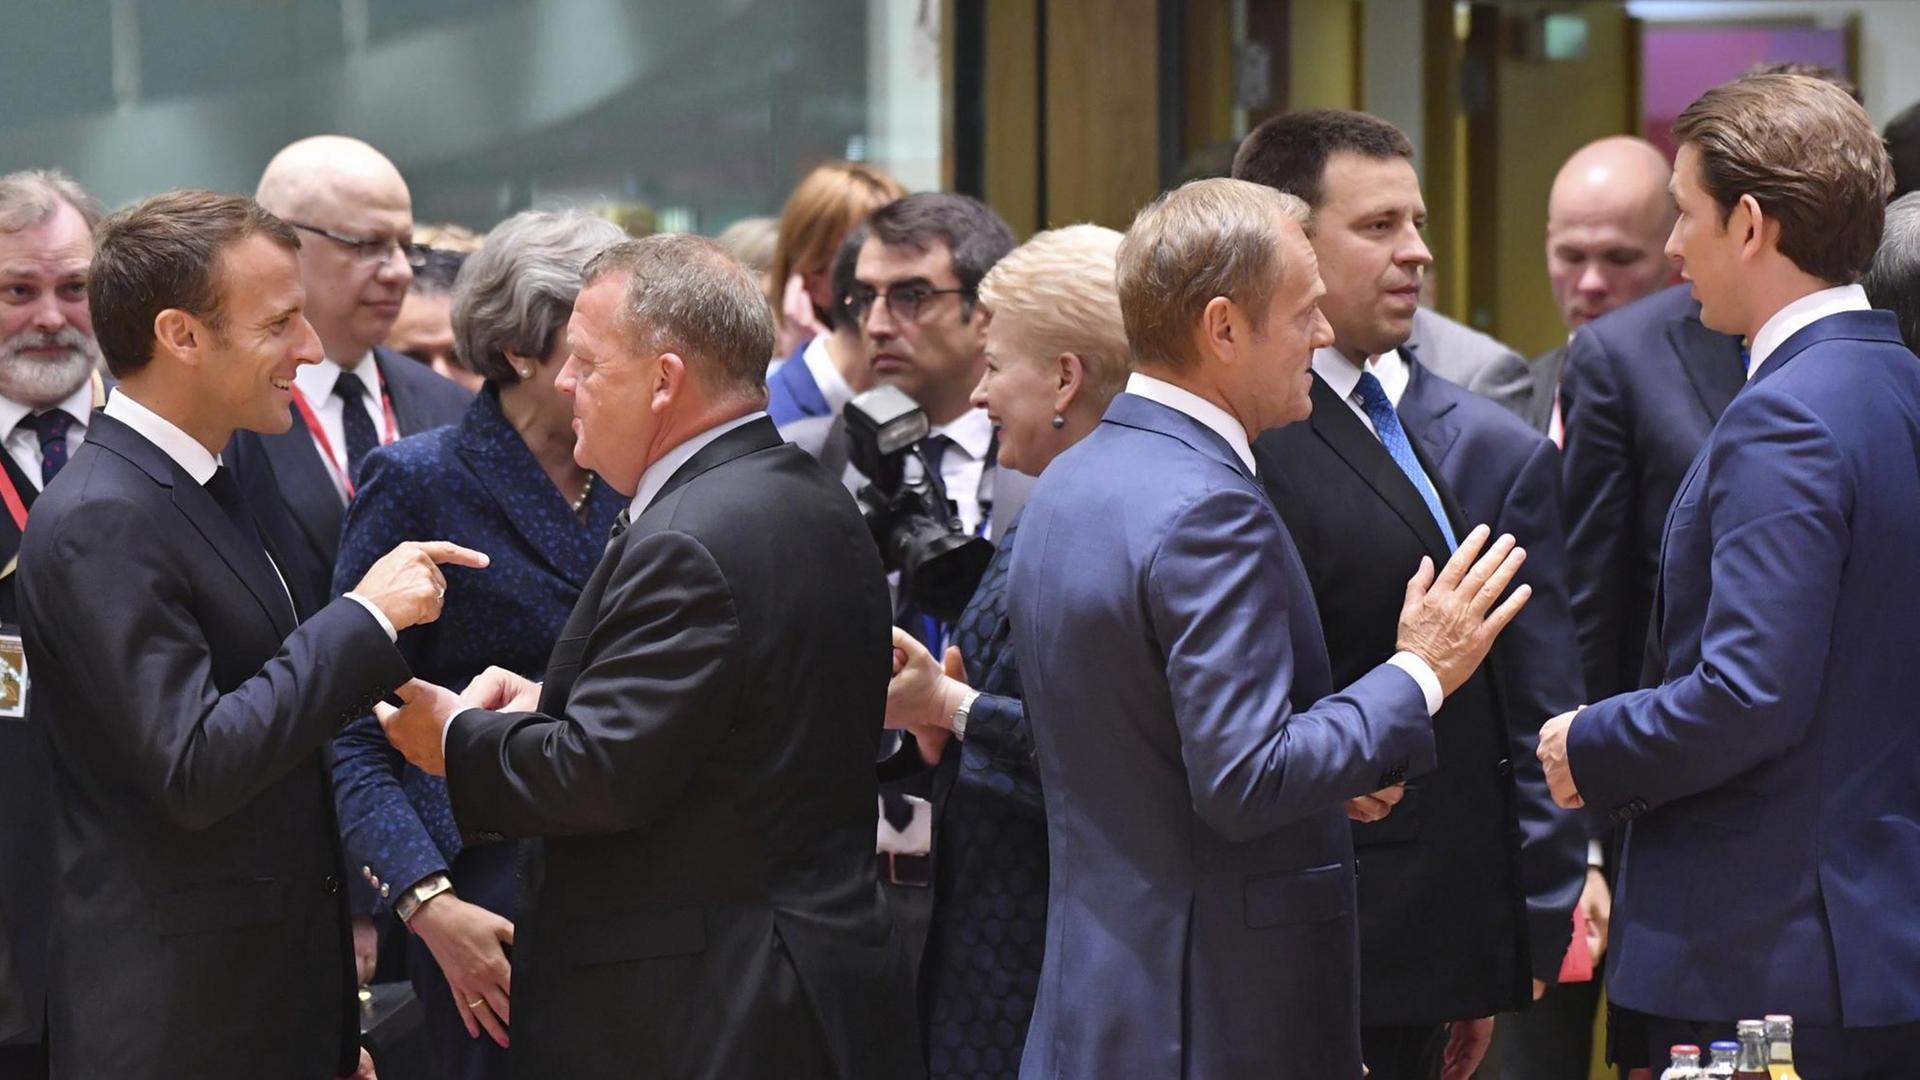 Das Bild zeigt den französischen Präsidenten Emmanuel Macron (links) im Gespräch mit Dänemarks Regierungschef Lars Lokke Rasmussen. Rechts im Bild der österreichische Bundeskanzler Sebastian Kurz im Gespräch mit EU-Ratspräsident Donald Tusk.